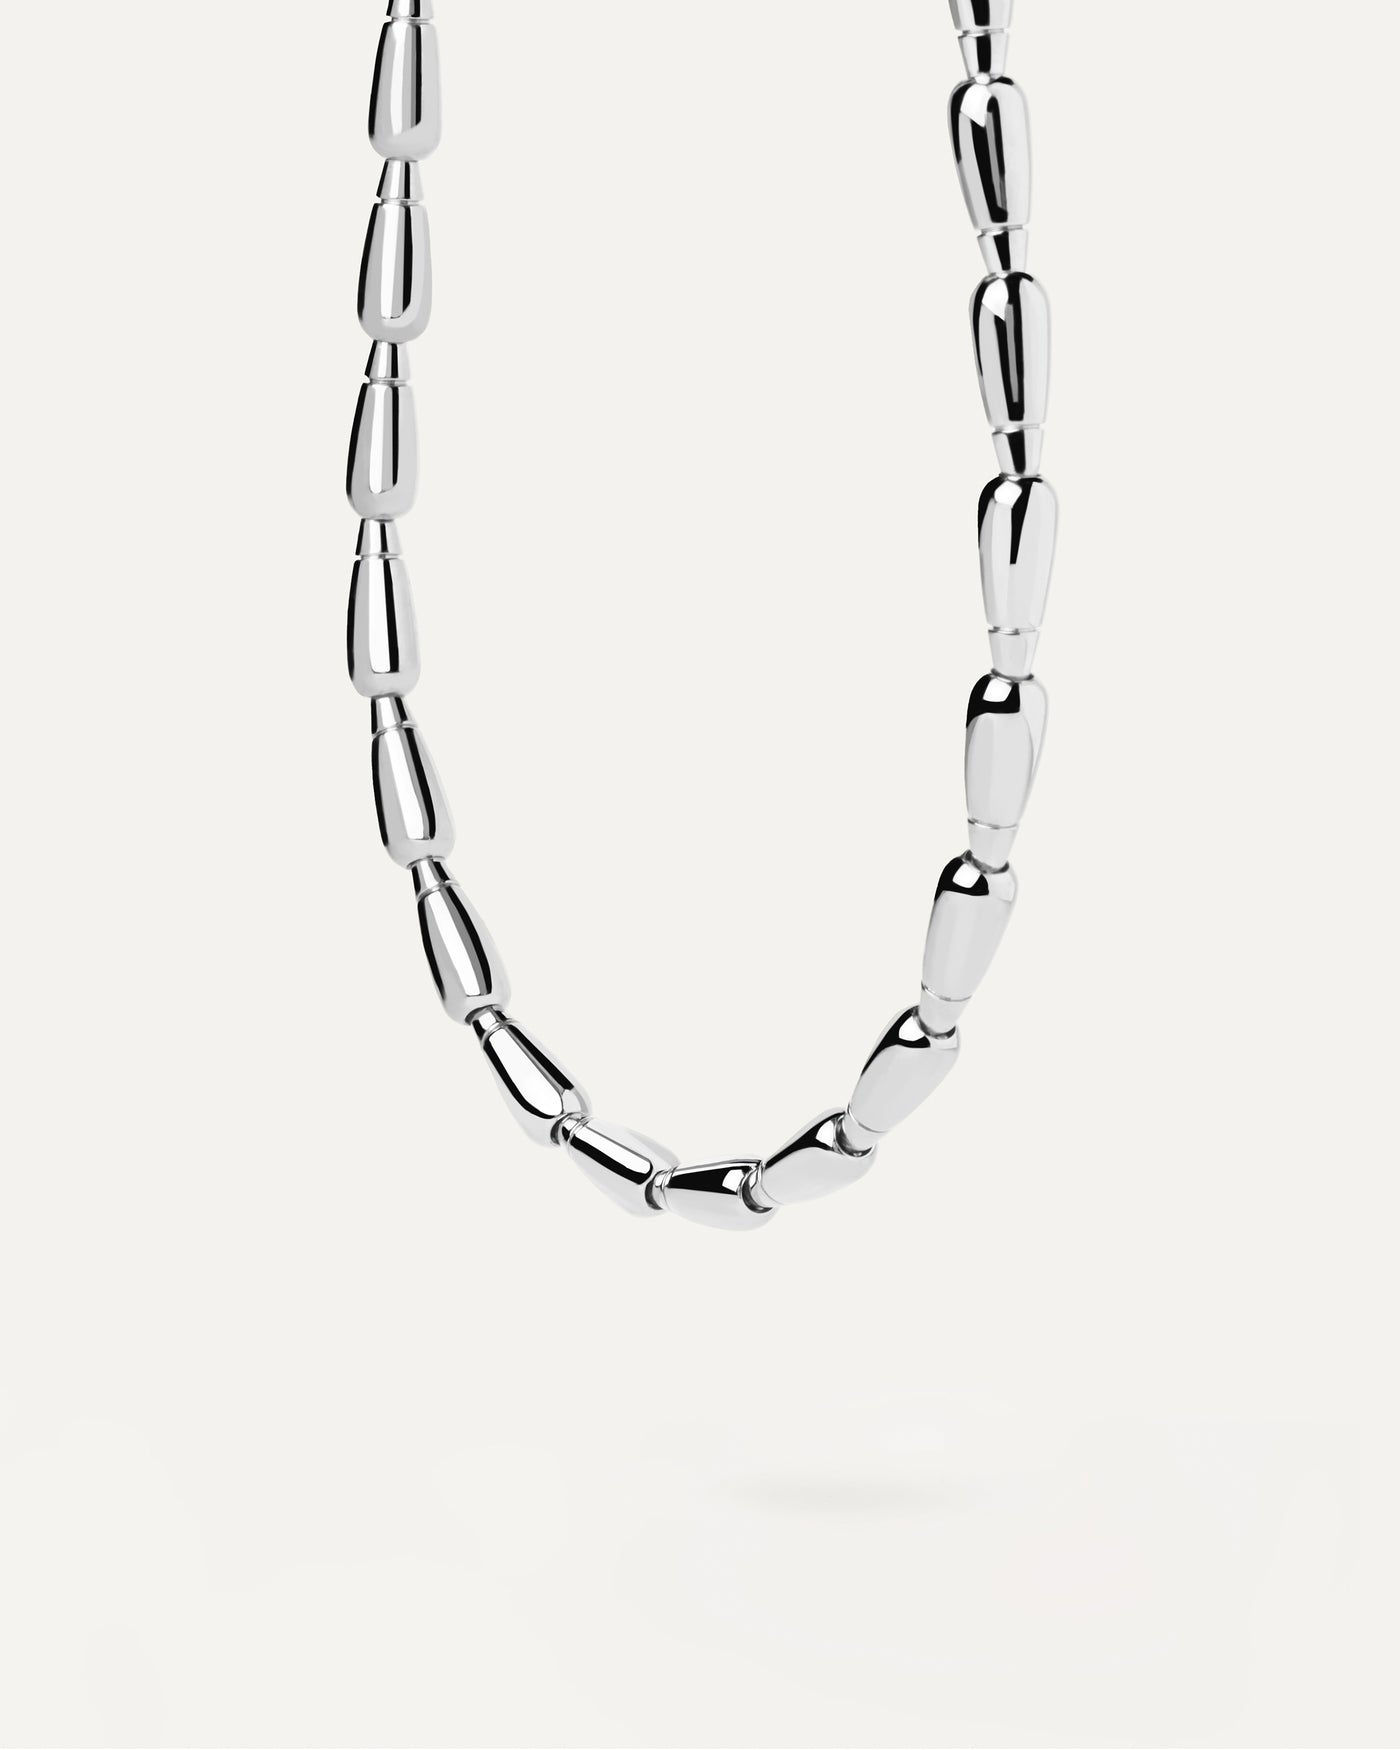 Gigi Silberhalskette. Silberne Halskette mit Tropfen-förmigen Perlen und quadratischem Verschluss. Erhalten Sie die neuesten Produkte von PDPAOLA. Geben Sie Ihre Bestellung sicher auf und erhalten Sie diesen Bestseller.